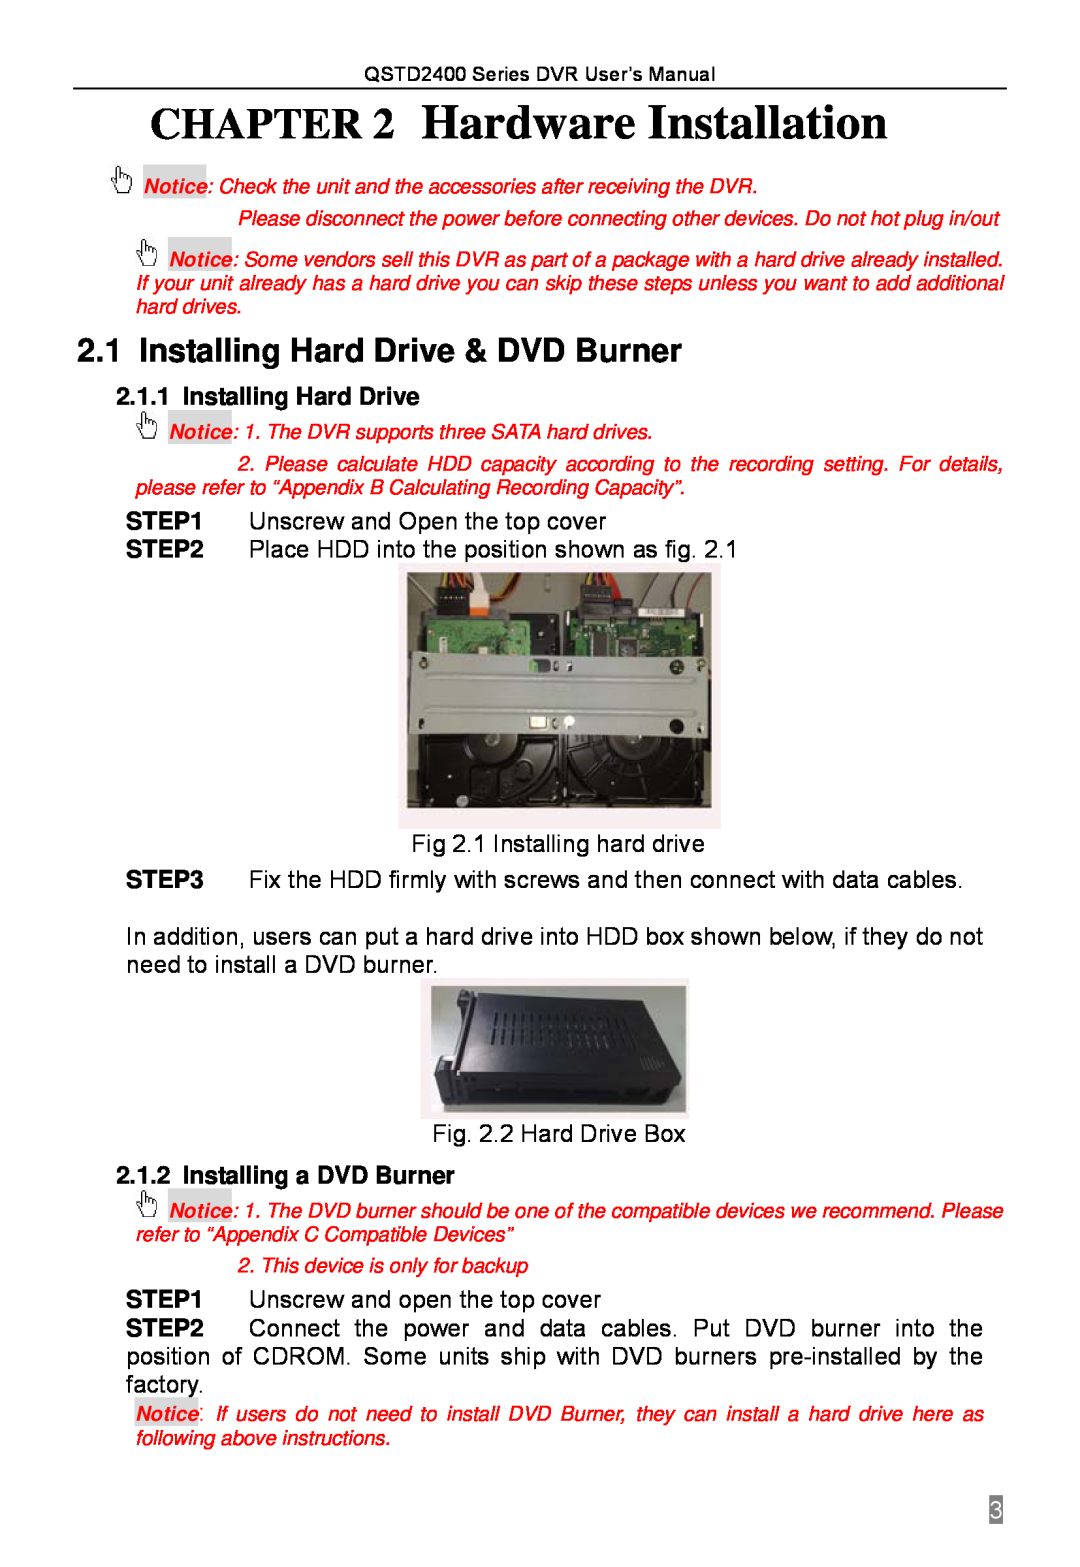 Q-See QSTD2408, QSTD2416, QSTD2404 Hardware Installation, Installing Hard Drive & DVD Burner, Installing a DVD Burner 